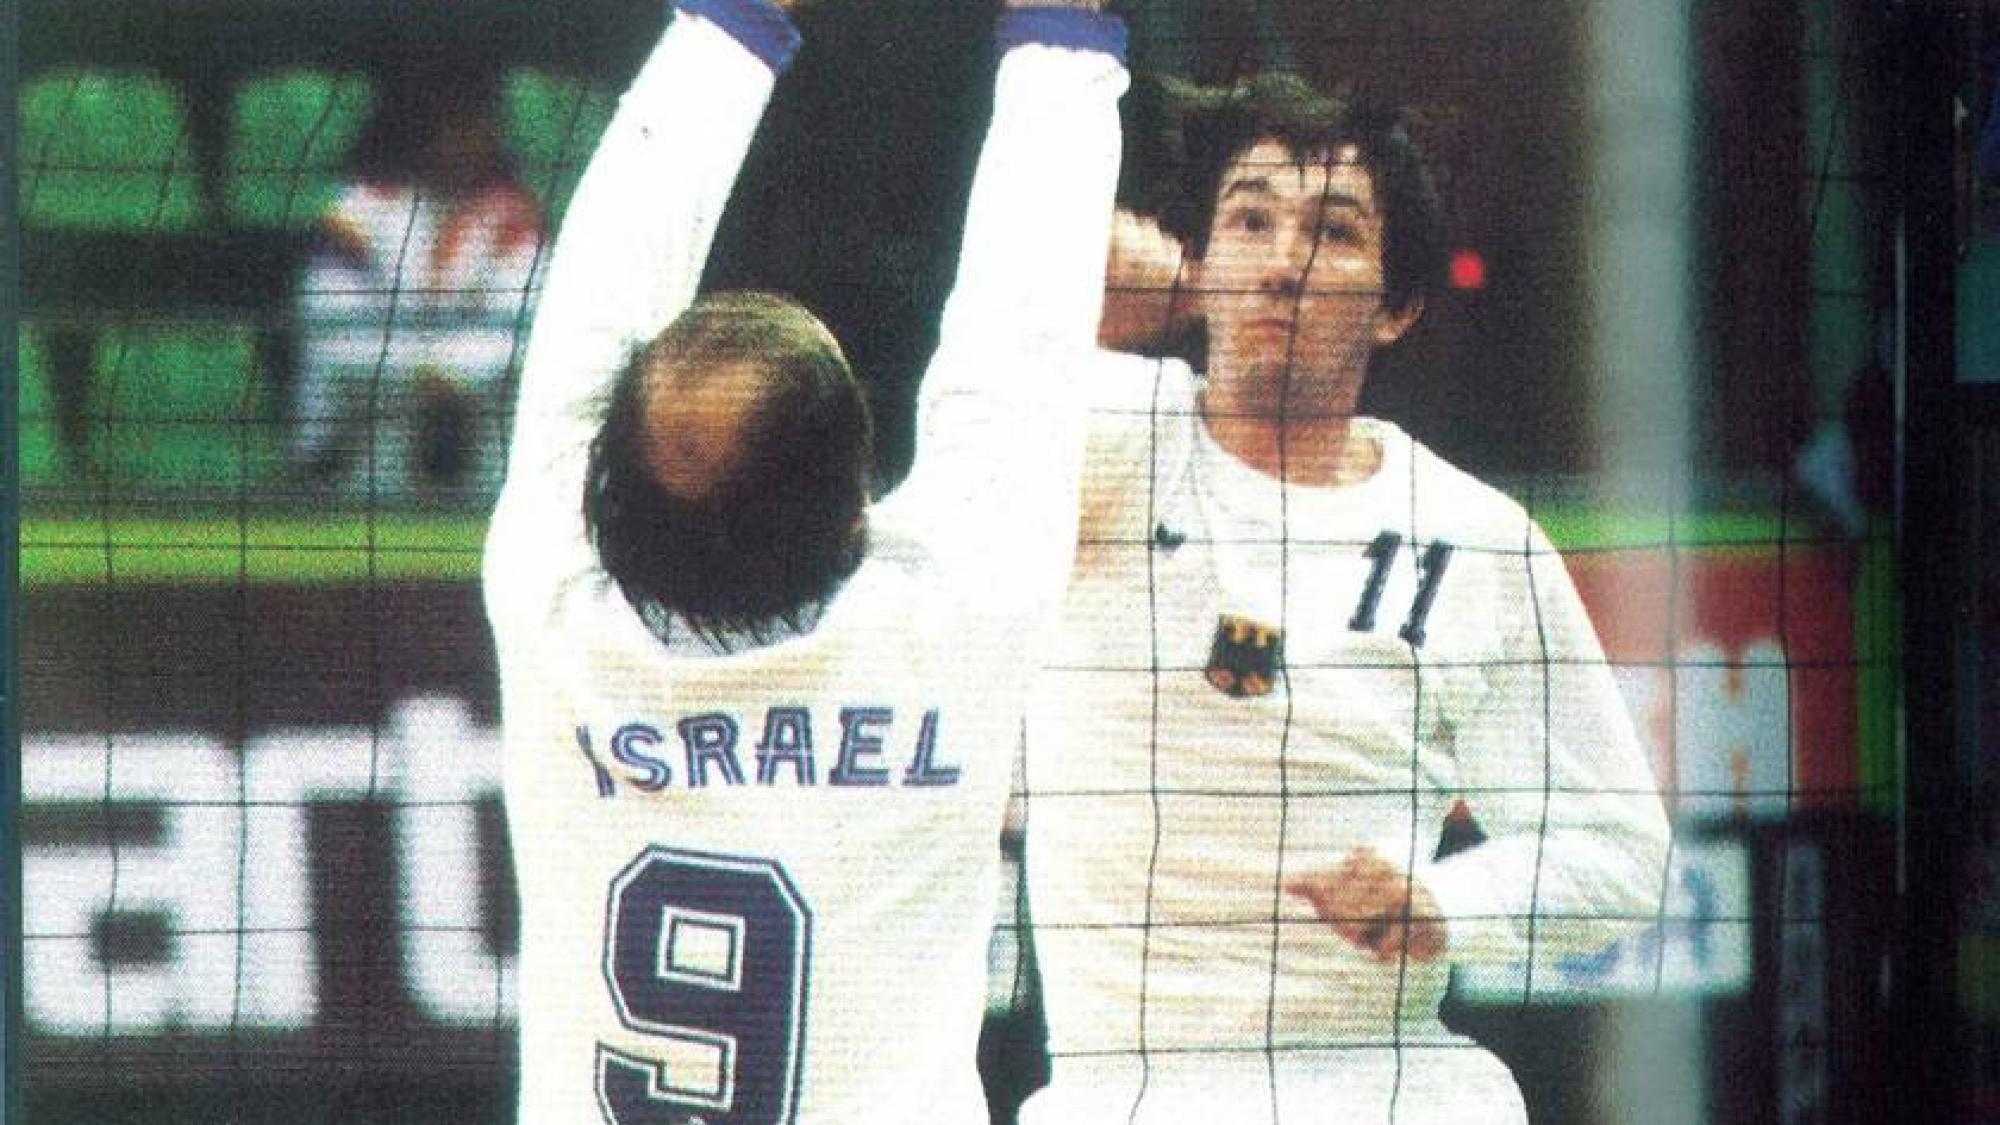 Match Volleyball, Seoul 1988